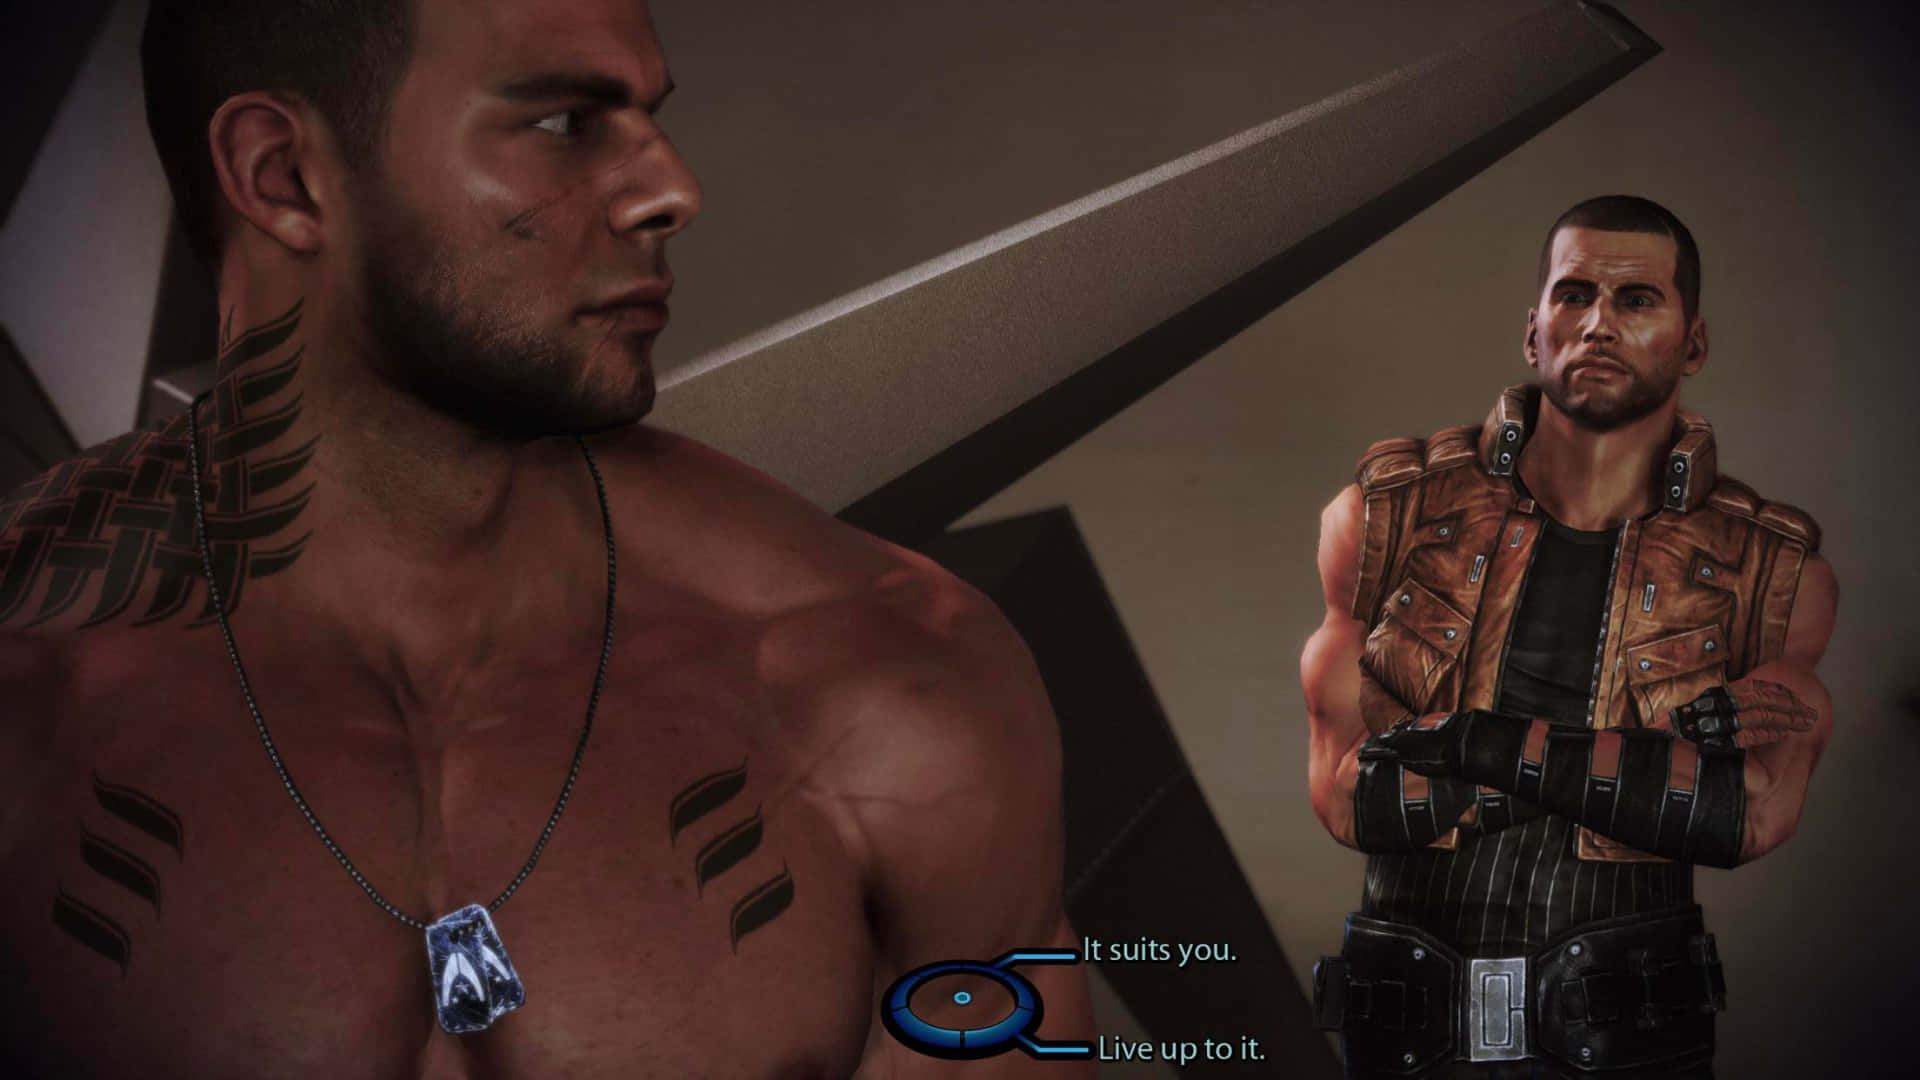 A musclebound hero standing tall - James Vega from Mass Effect Wallpaper